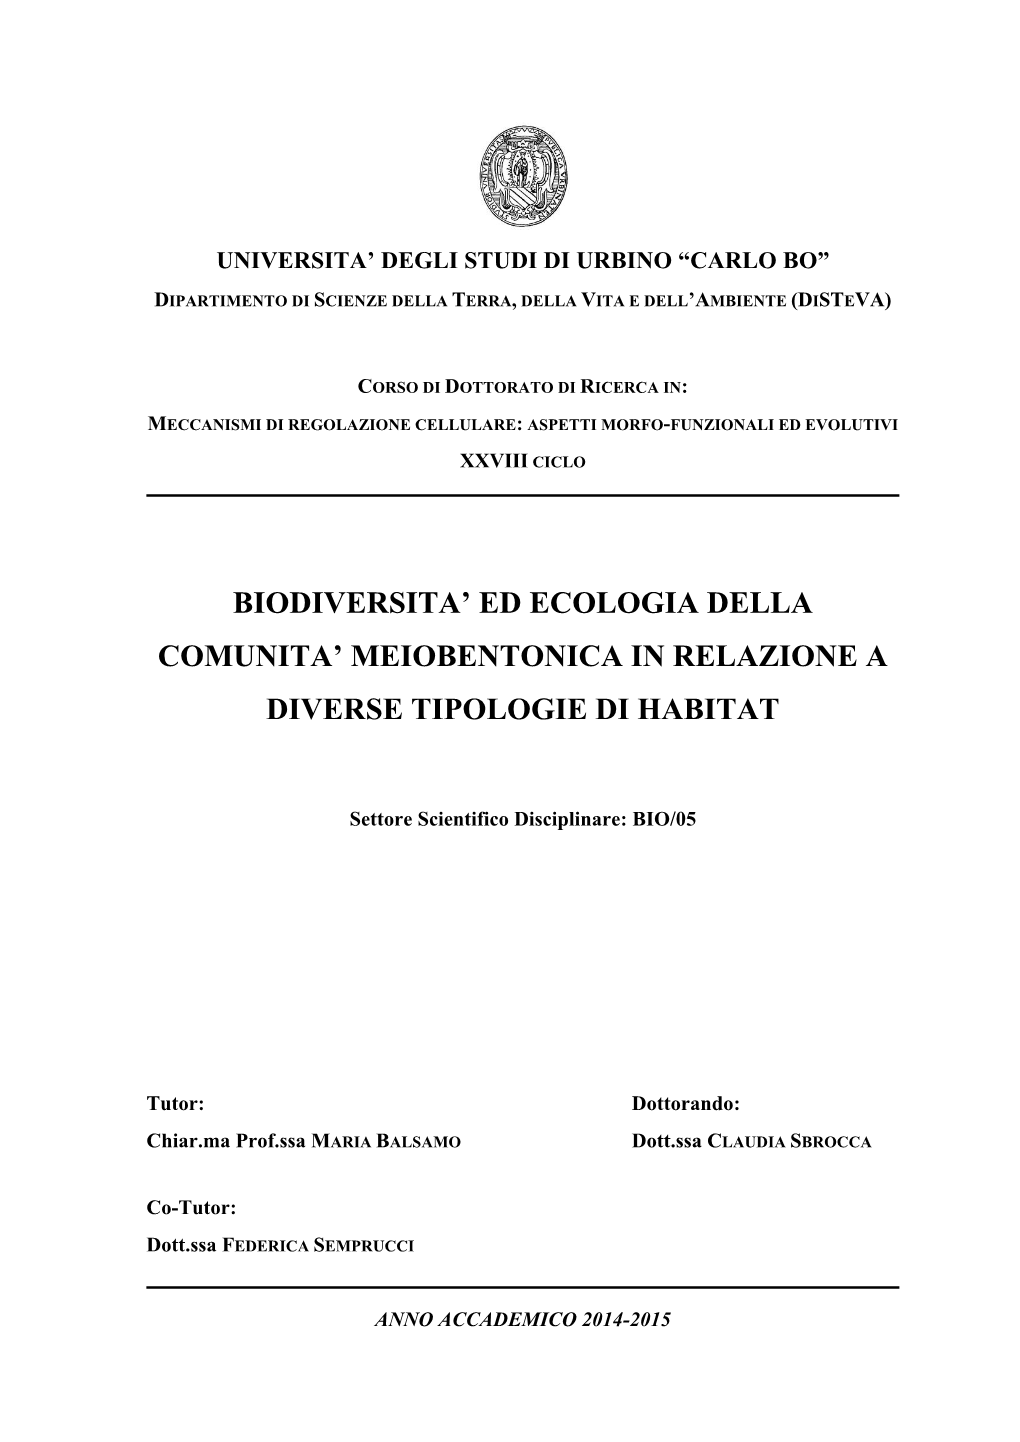 Biodiversita' Ed Ecologia Della Comunita